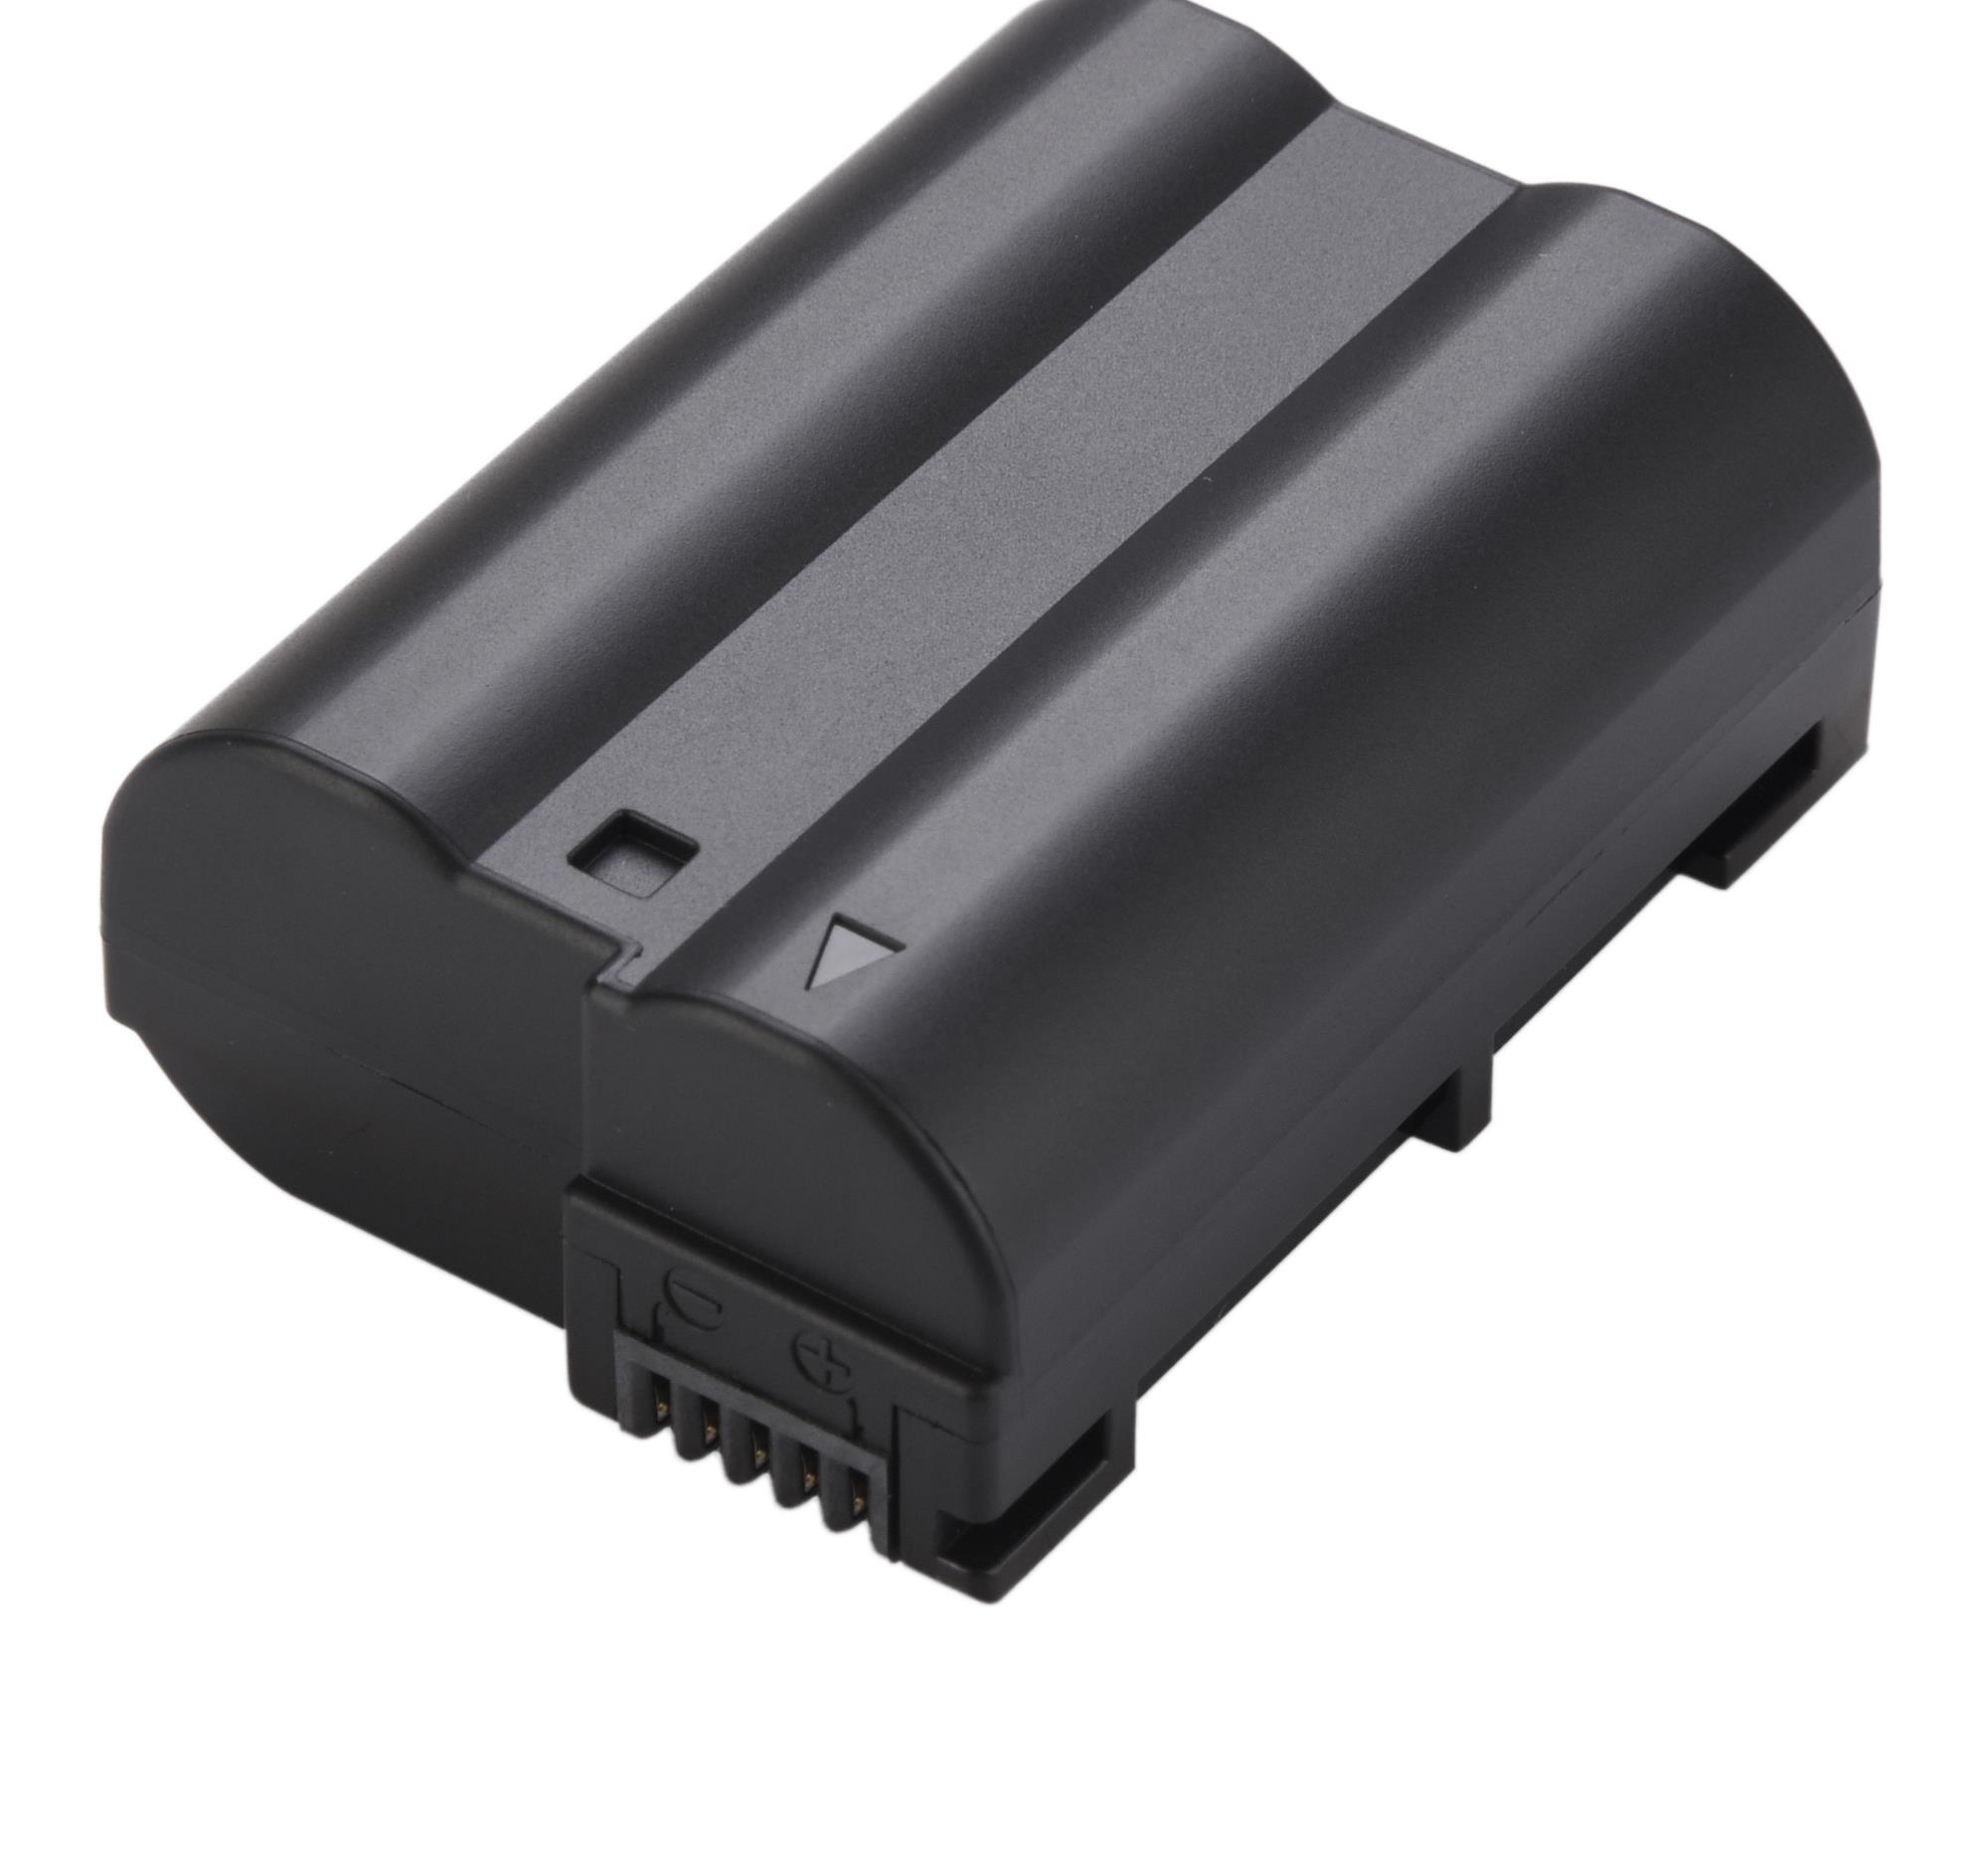 Kit 1 Bateria EN-EL15c PRO + Carregador para Nikon D850 D600 D7100 D7500 1 V1